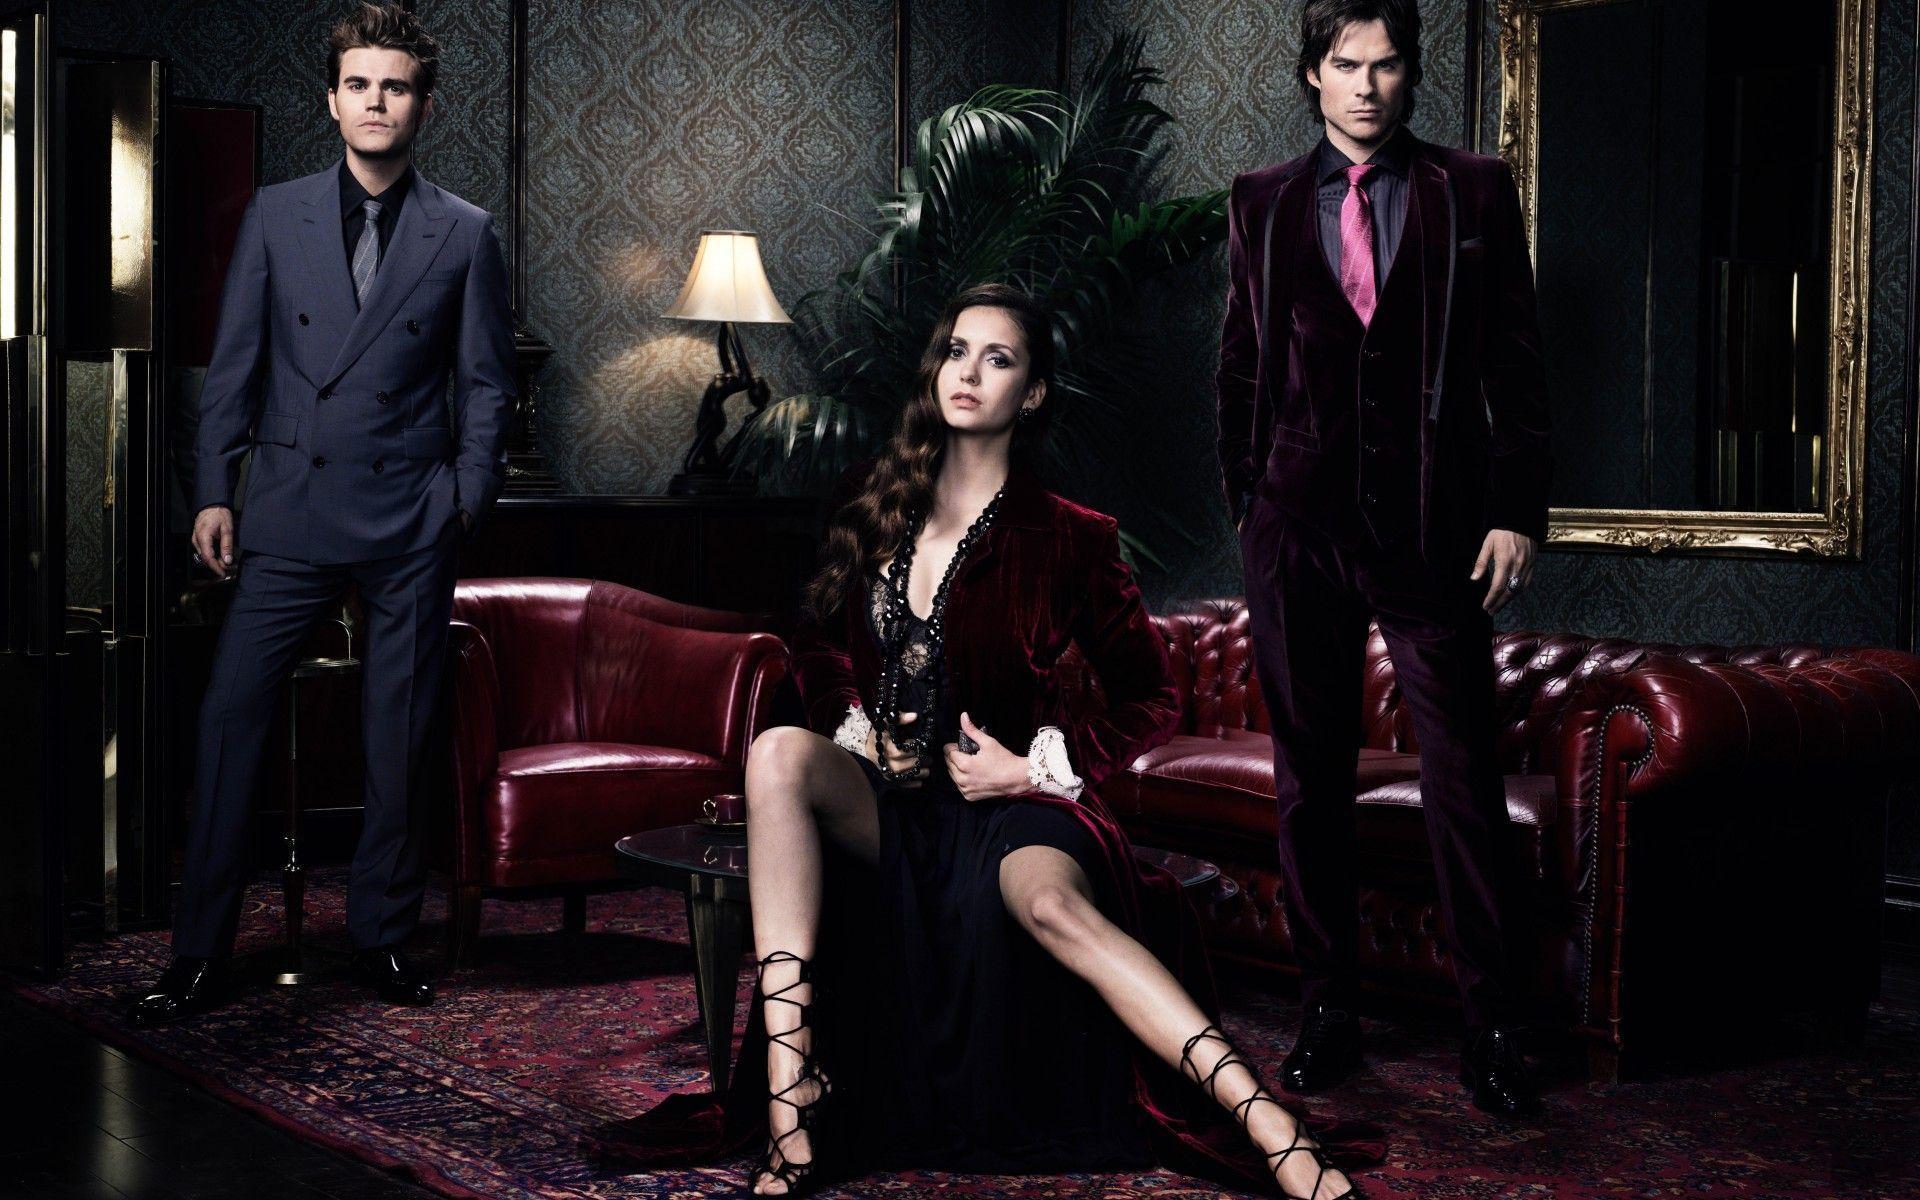 The Vampire Diaries 2014 Desktop Background Wide or HD. TV Series